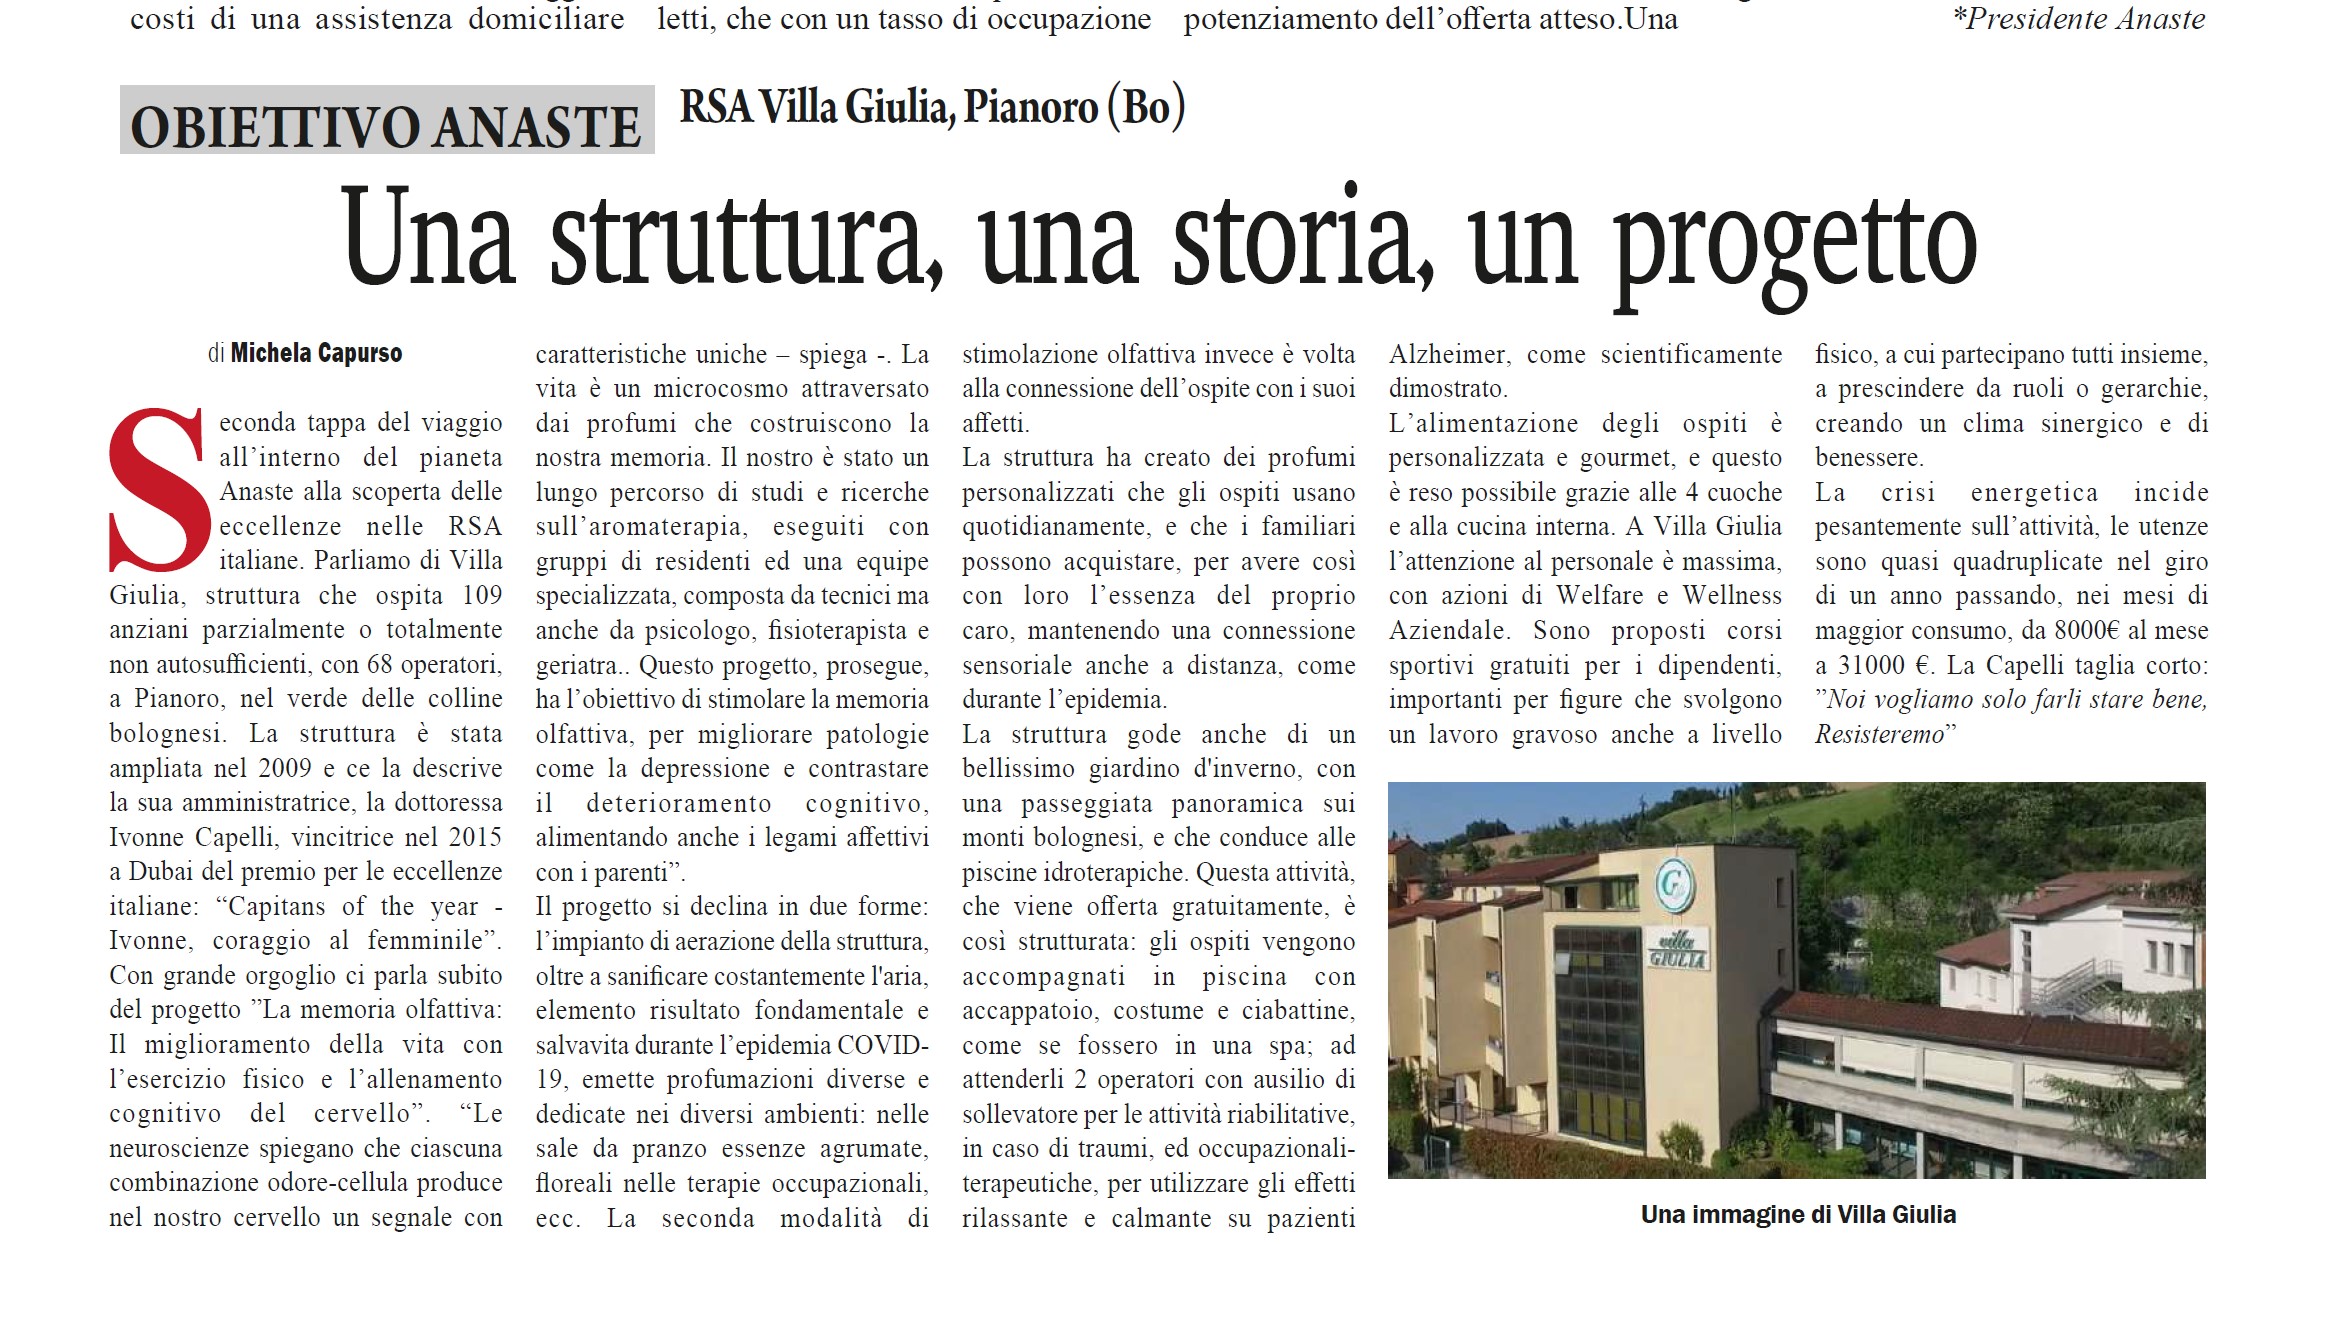 CRA Villa Giulia di Pianoro: Una struttura, una storia, un progetto